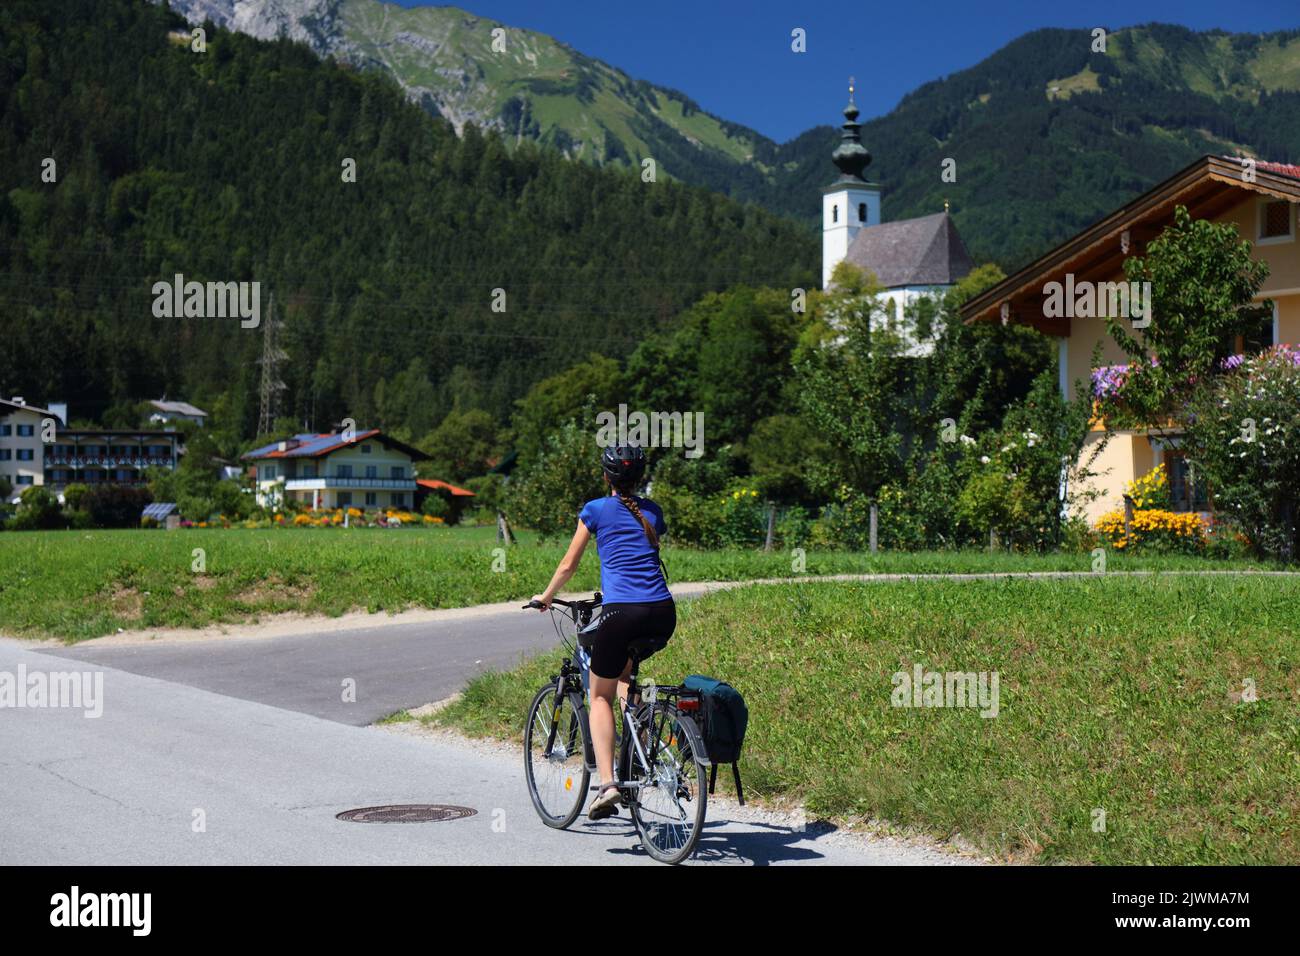 SALZBURG, AUTRICHE - 4 AOÛT 2022 : une cycliste féminine admire des villages et des montagnes près de Salzbourg tout en pédalant sur la piste cyclable longue distance Tauernradweg Banque D'Images